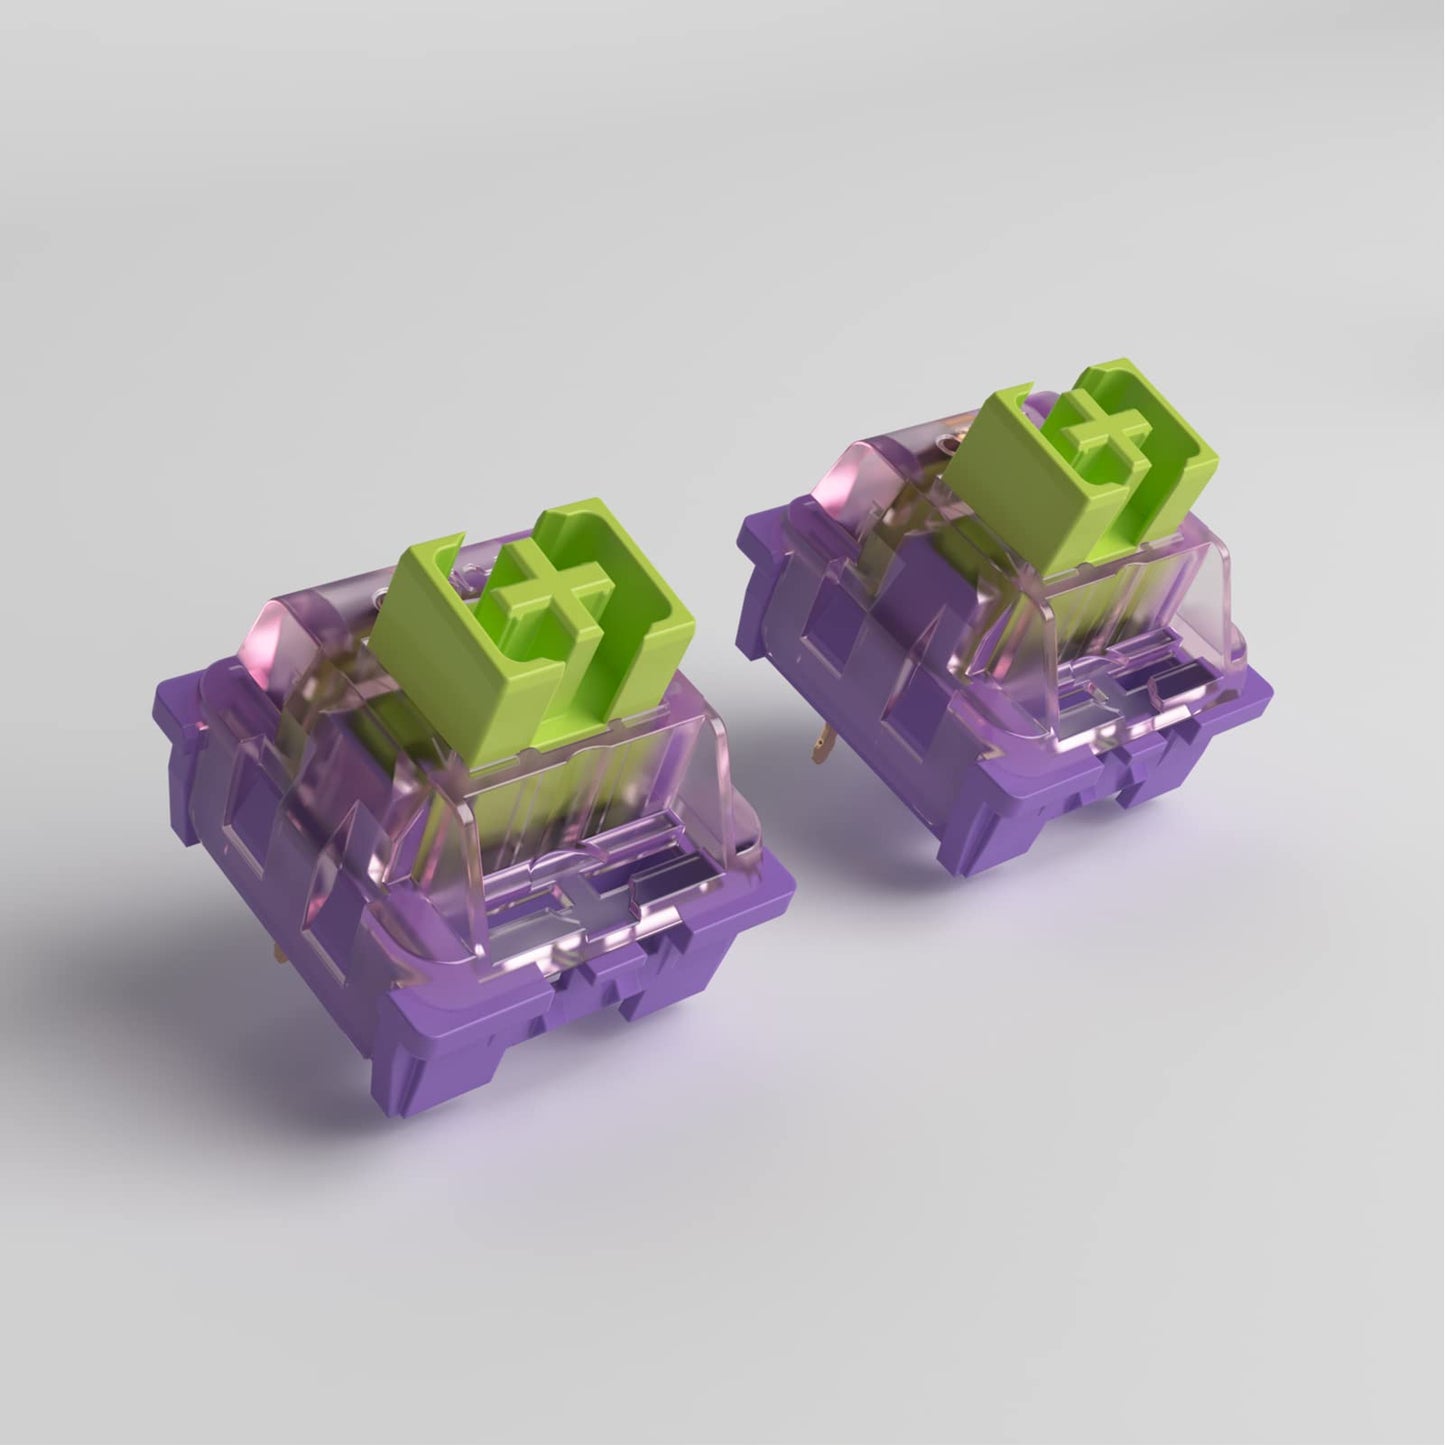 Akko CS Starfish Switches 3 Pin 50gf خطي مع جذع مقاوم للغبار متوافق مع لوحة المفاتيح الميكانيكية MX (45 قطعة) 